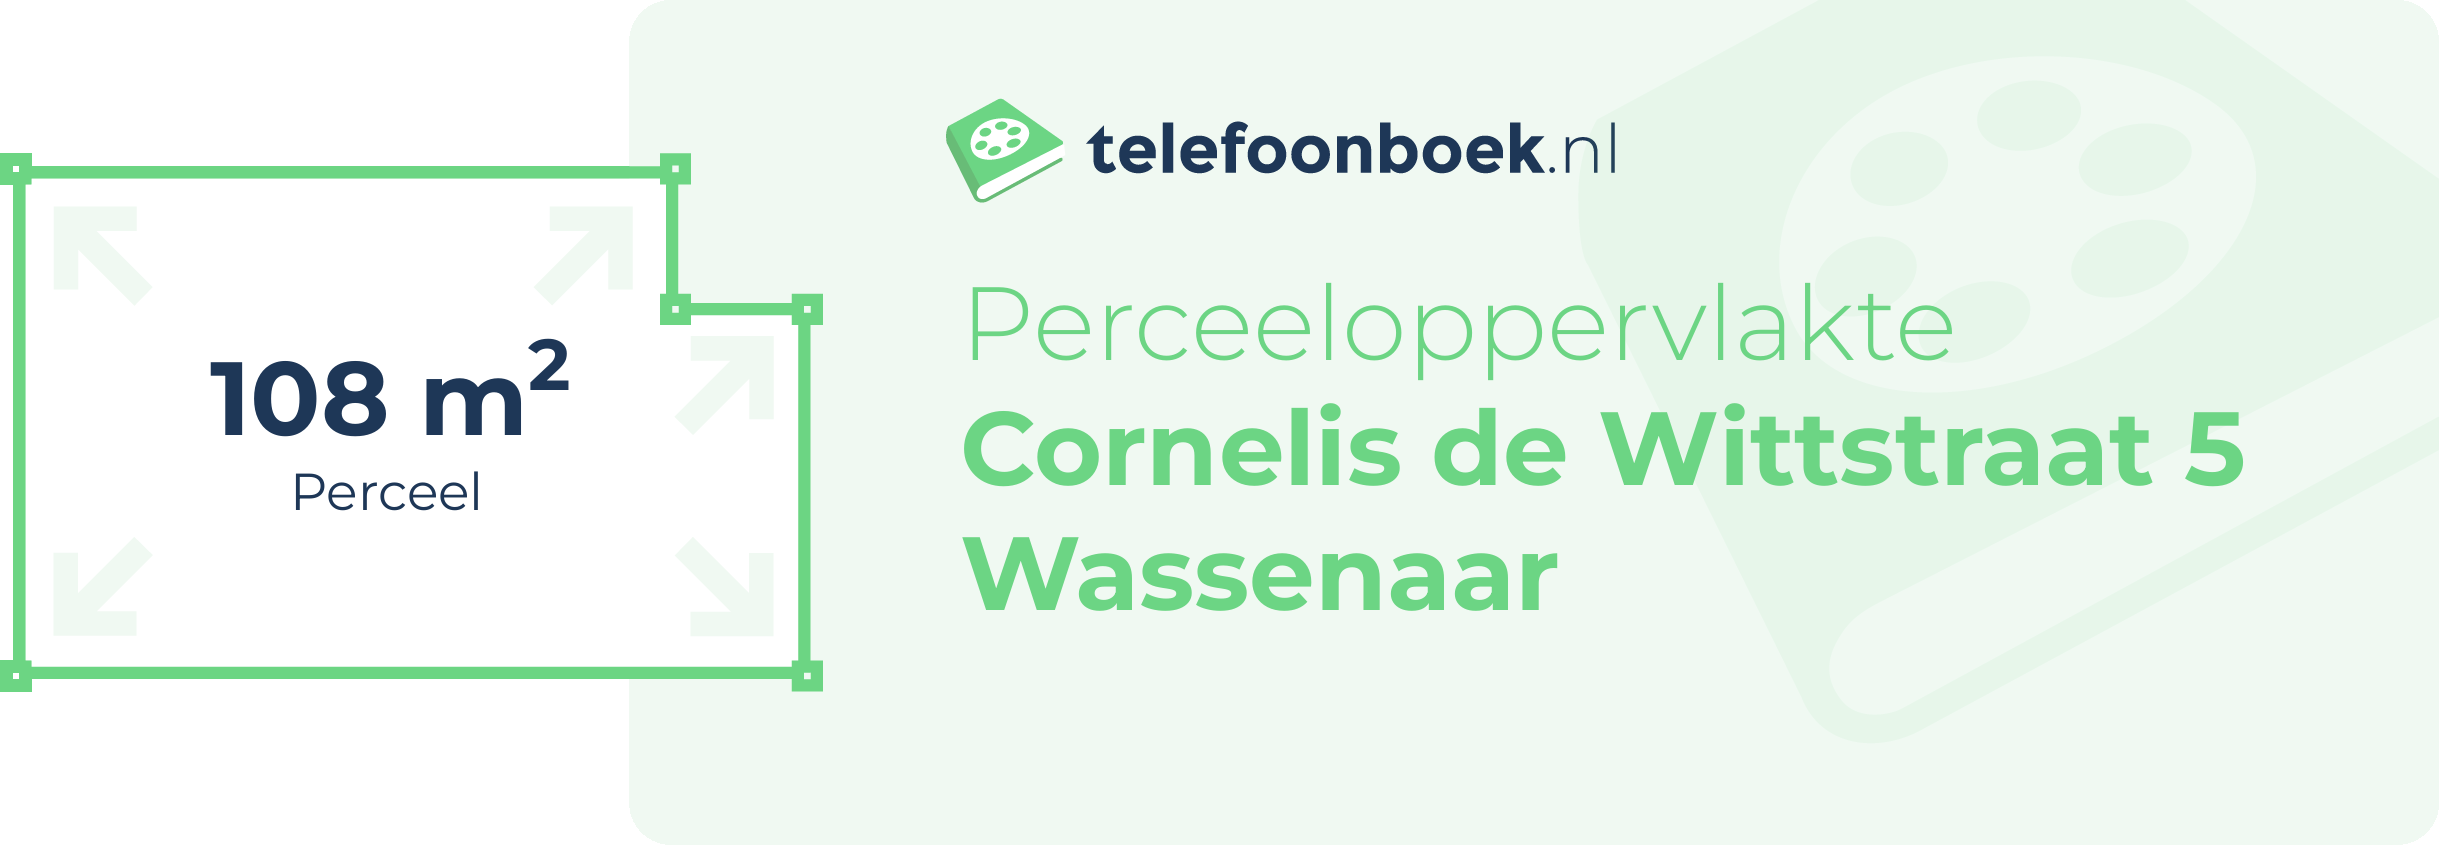 Perceeloppervlakte Cornelis De Wittstraat 5 Wassenaar